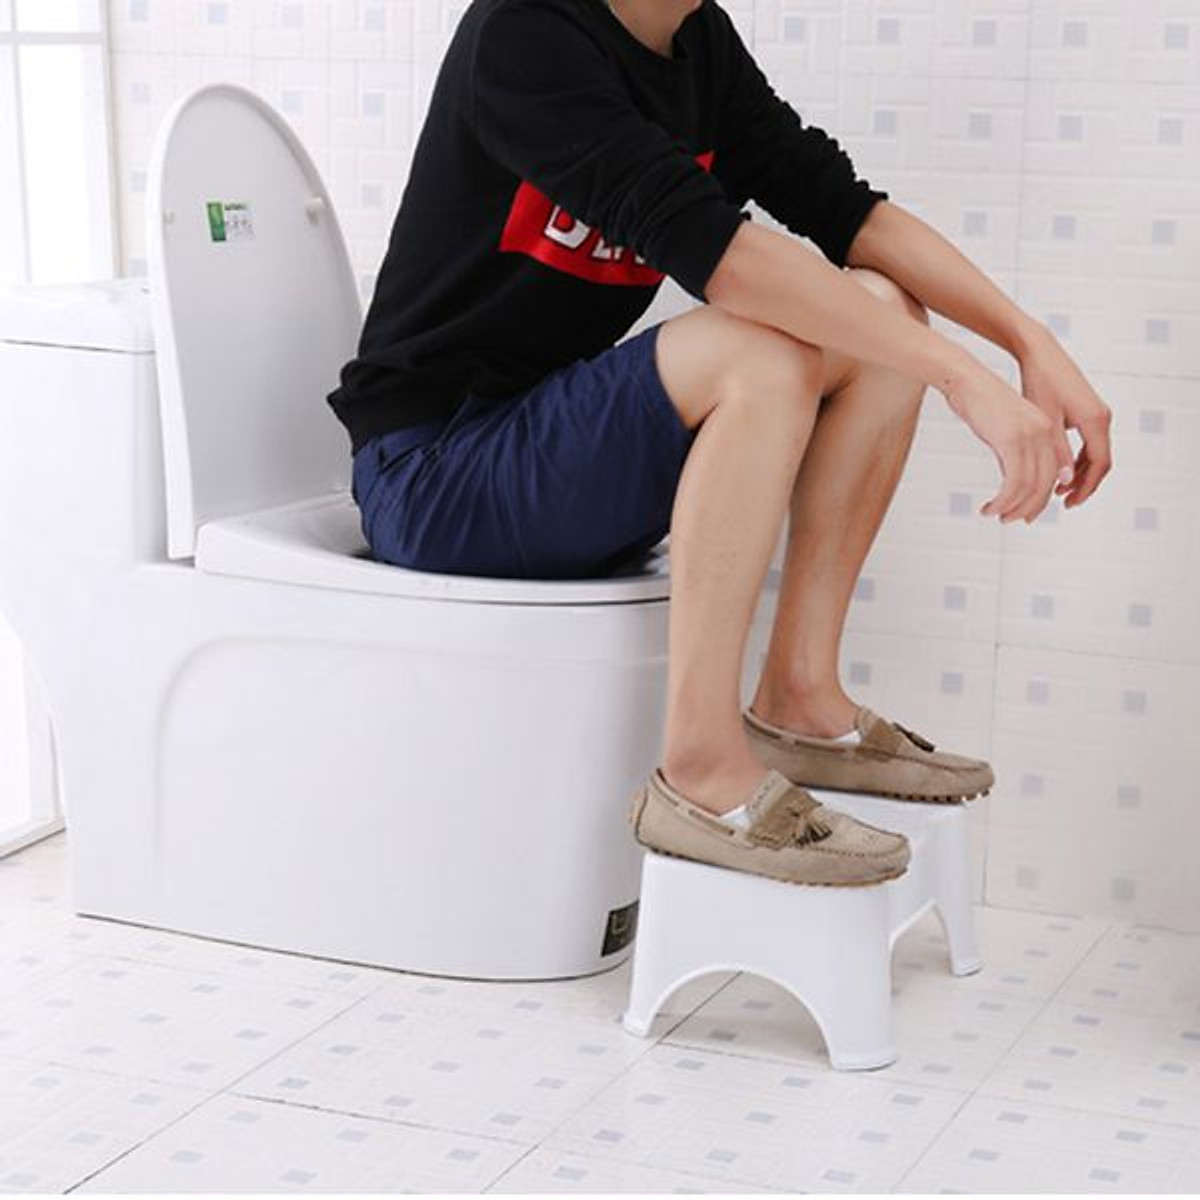 Ghế Kê Chân Toilet Chống Táo Bón Ngăn Ngừa Các Bệnh Tiêu Hóa Khi Đi Vệ Sinh - Hàng Chính Hãng MINIIN